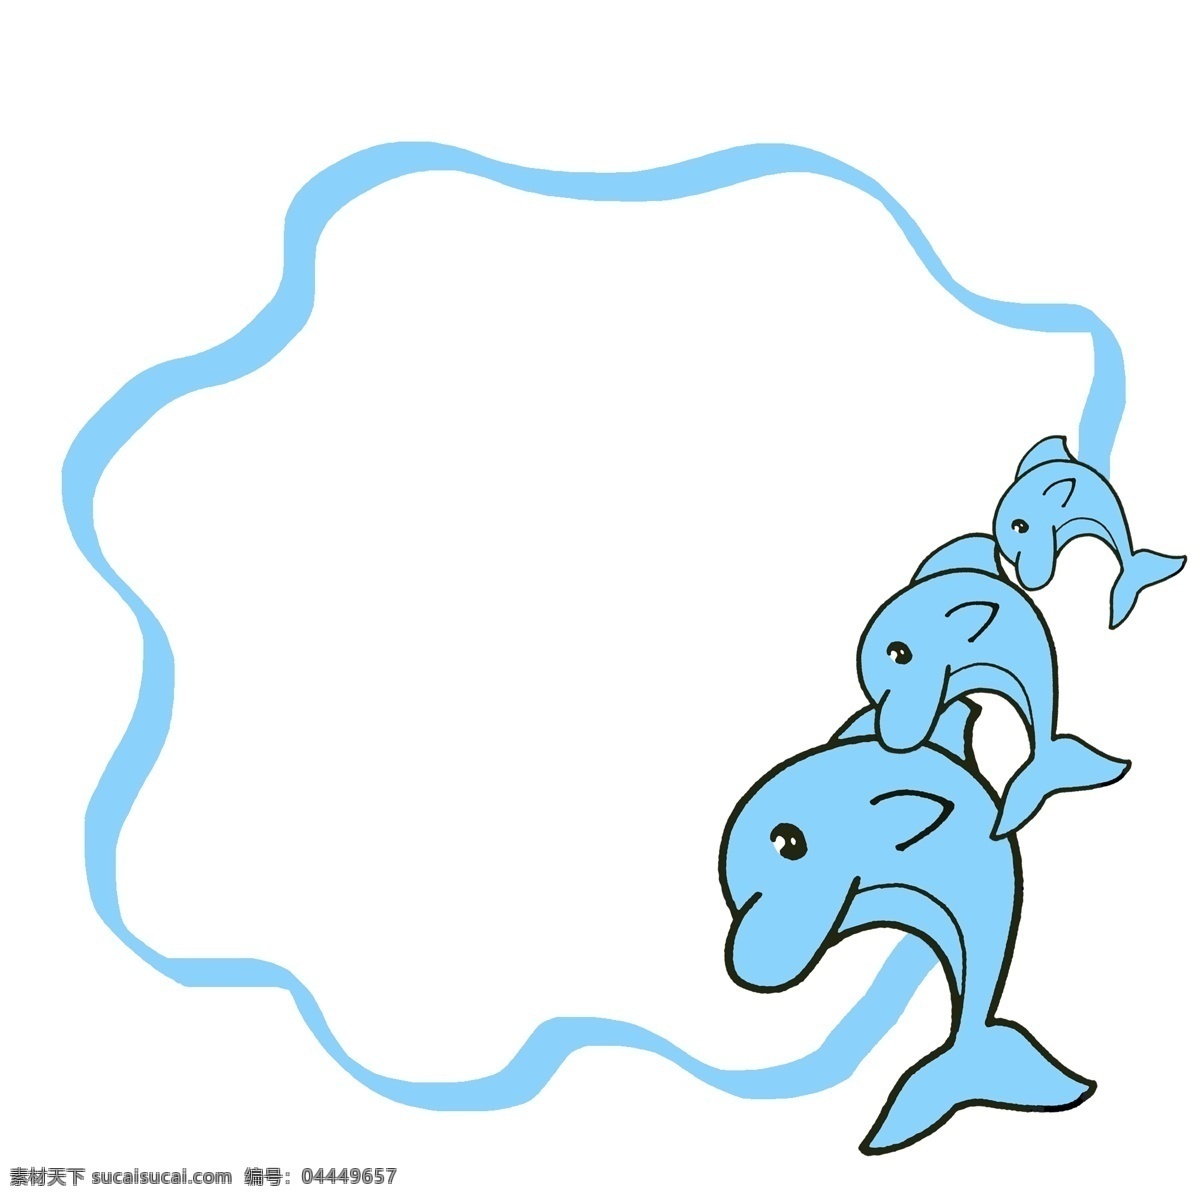 海豚 边框 卡通 插画 海豚的边框 卡通插画 边框插画 框架 框子 框框 简易边框 海洋的动物